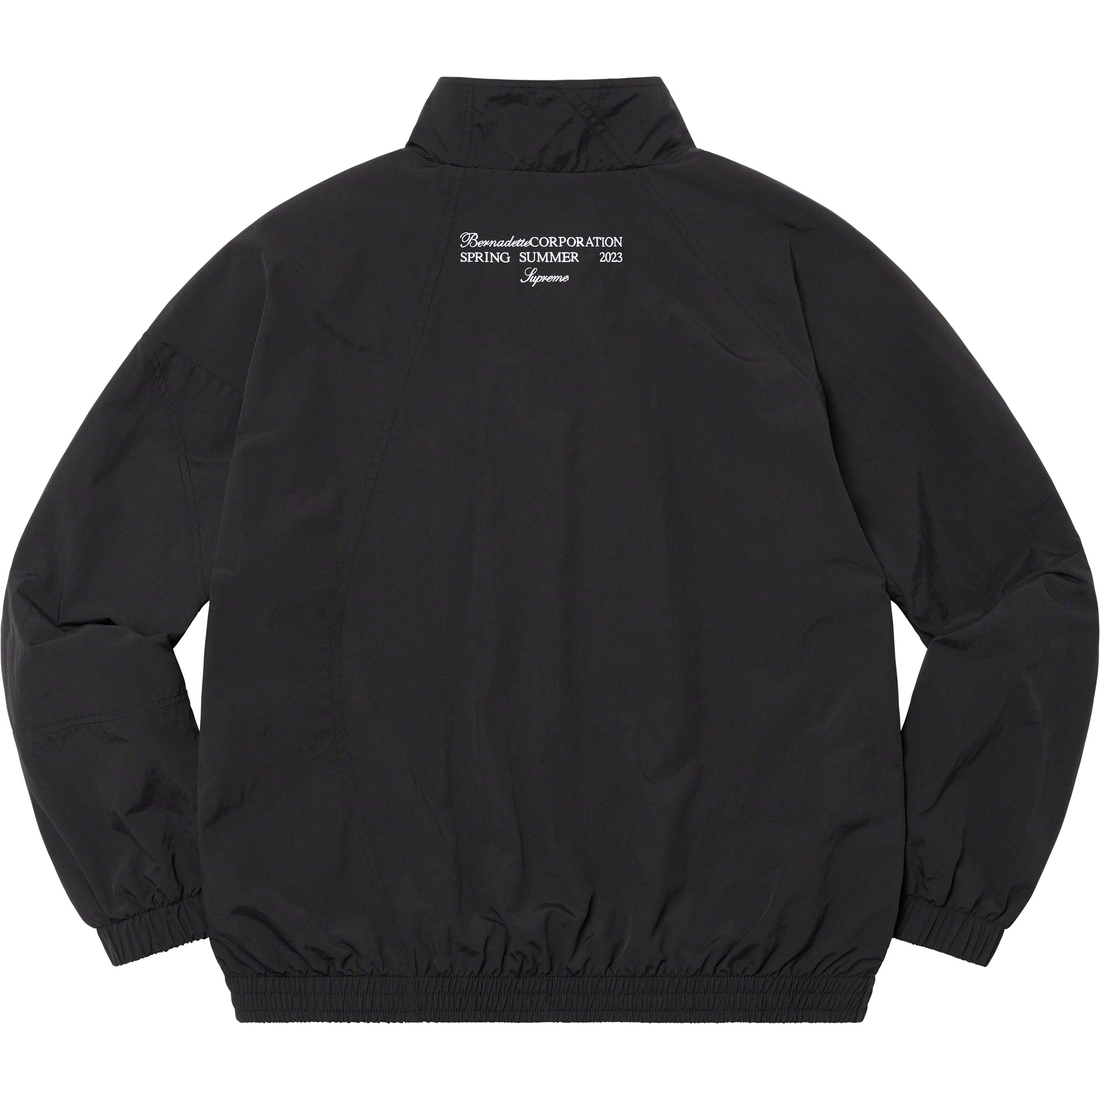 Details on Supreme Bernadette Corporation Track Jacket Black from spring summer
                                                    2023 (Price is $188)